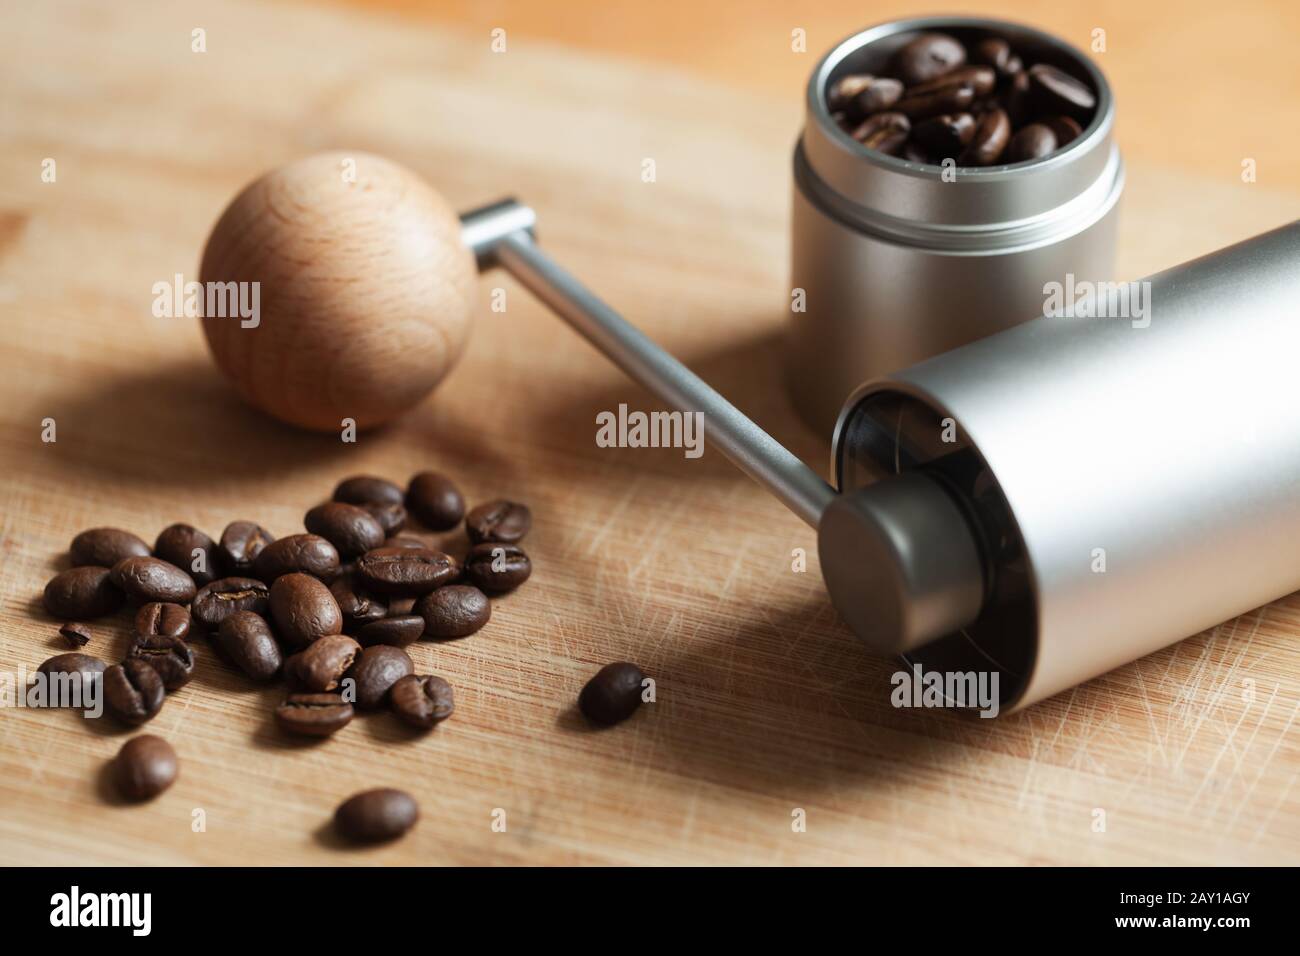 Molinillo de café manual - HEIHOX Molinillo de café manual con